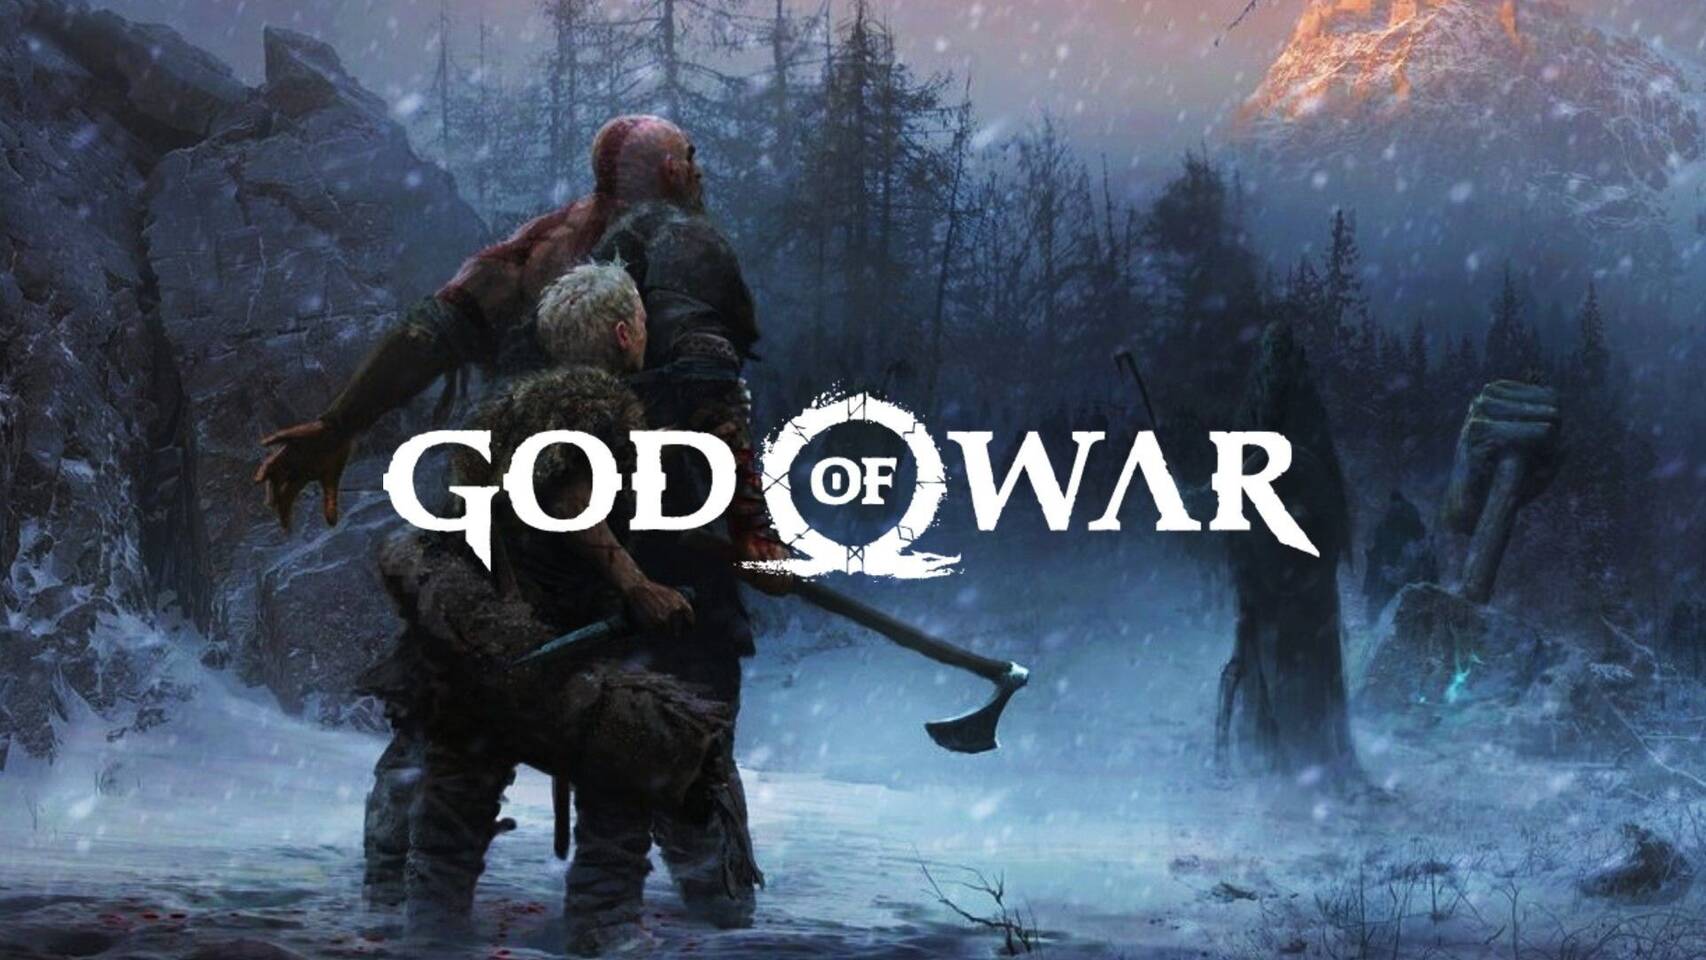 god of war ragnarok on ps4 download free